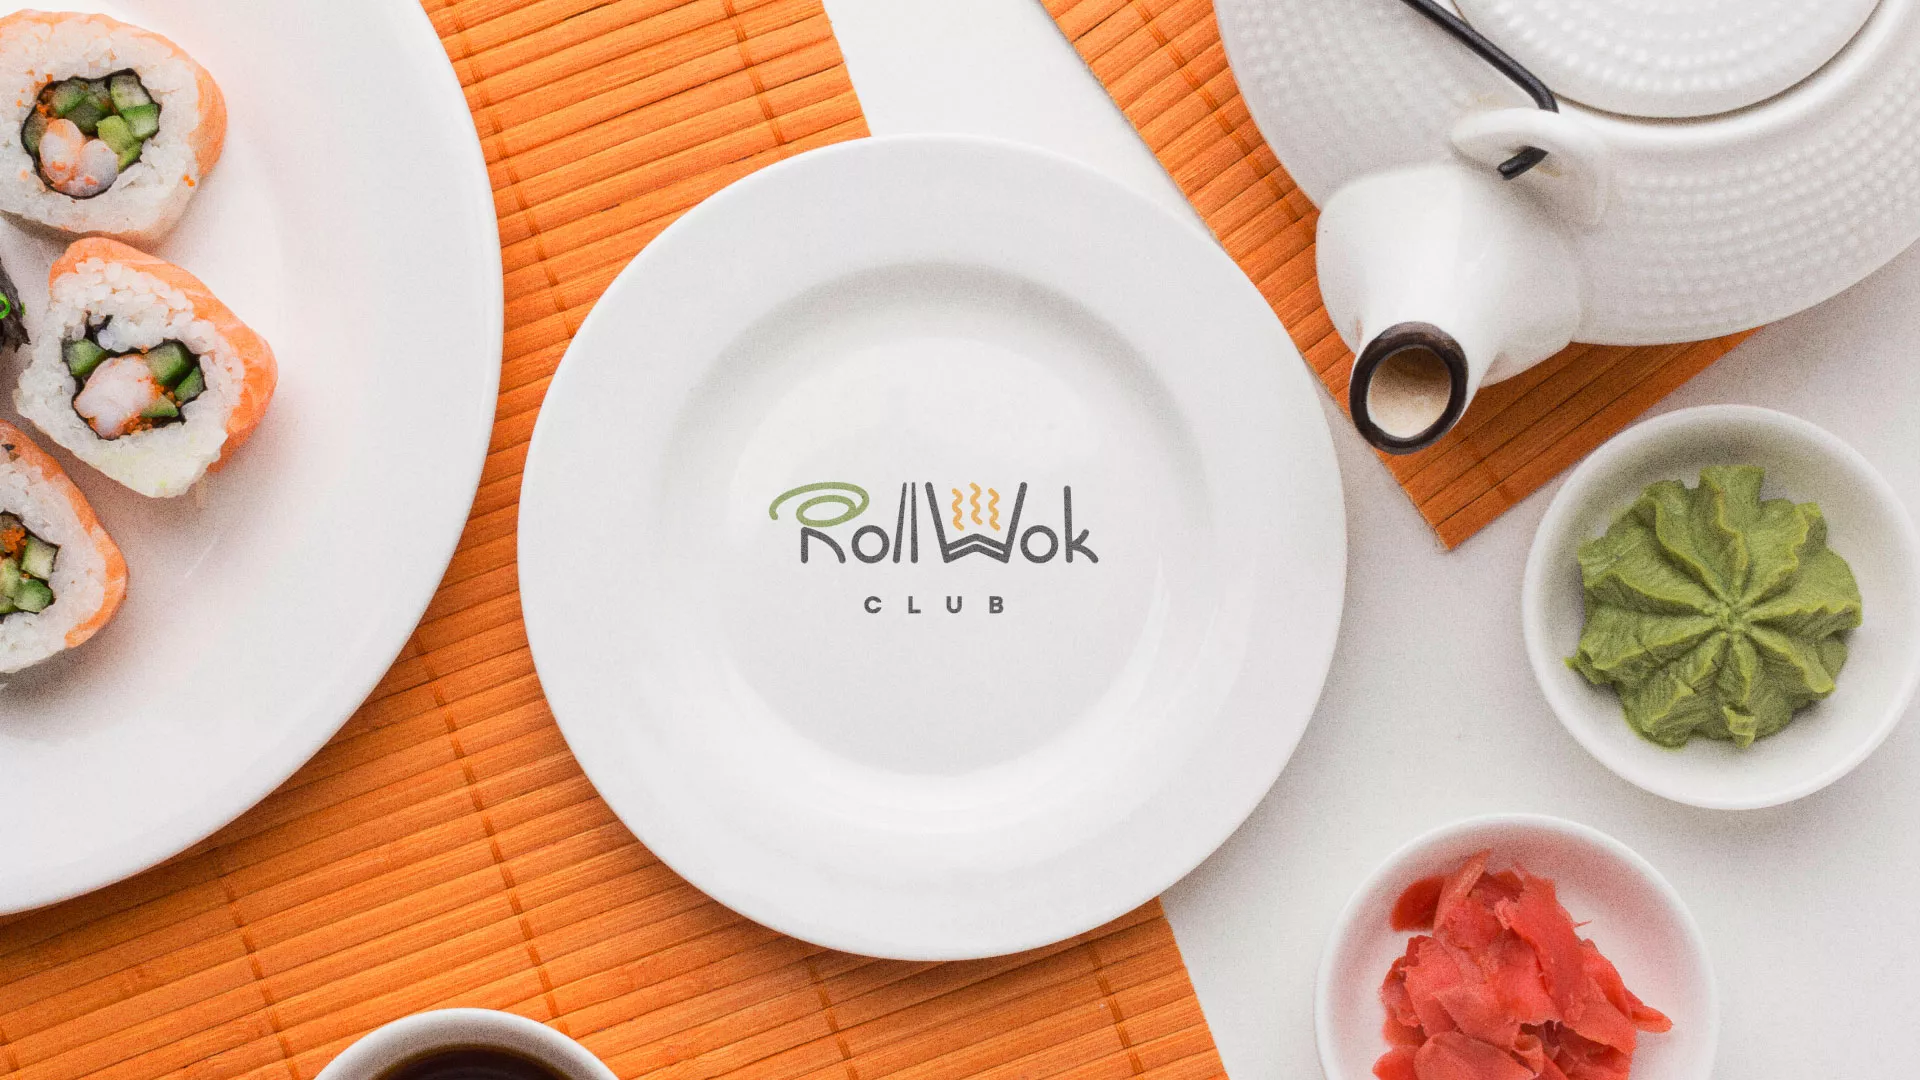 Разработка логотипа и фирменного стиля суши-бара «Roll Wok Club» в Мирном